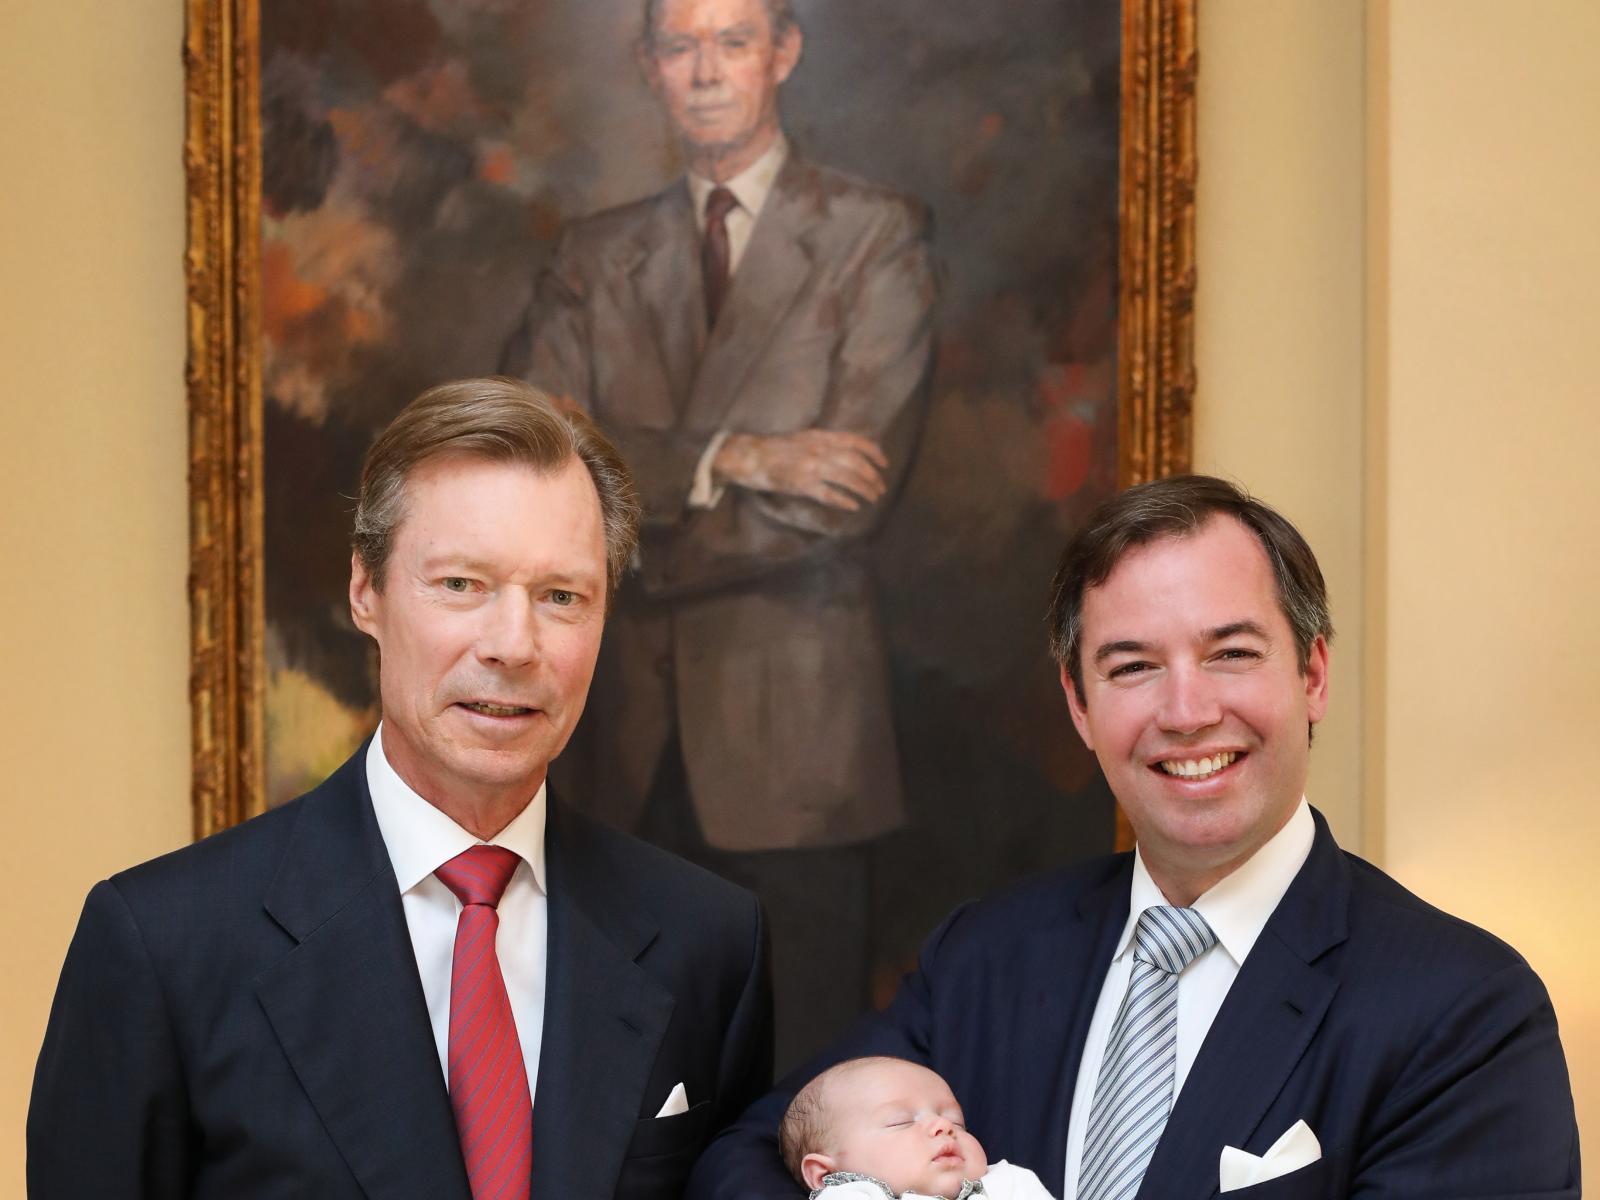 Quatre générations: Le Grand-Duc, le Grand-Duc héritier et le Prince Charles devant le portrait du Grand-Duc Jean